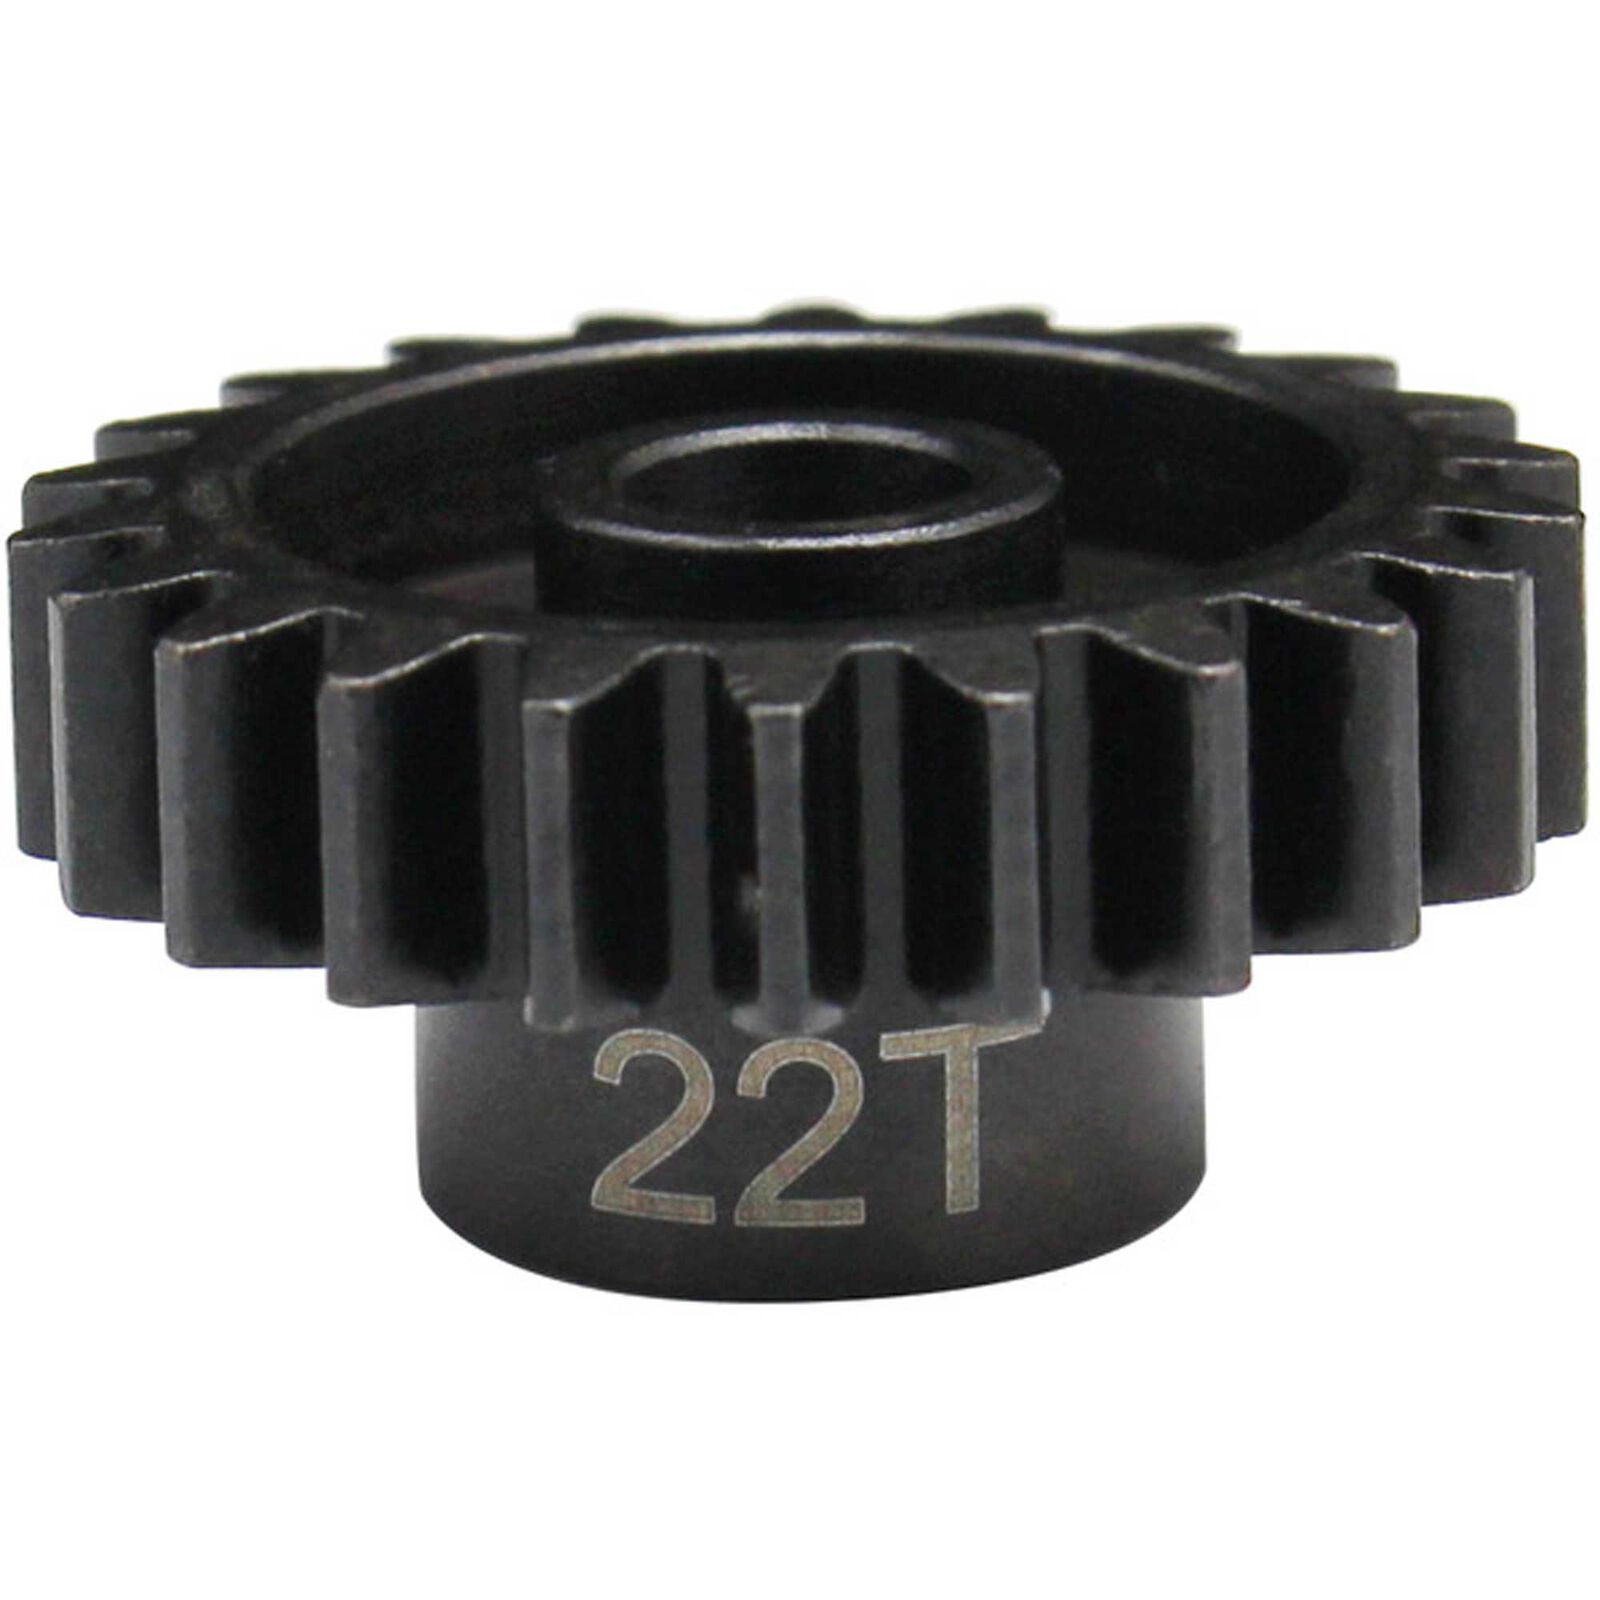 22t Mod 1.5 Hardened Steel Pinion Gear 8mm Bore